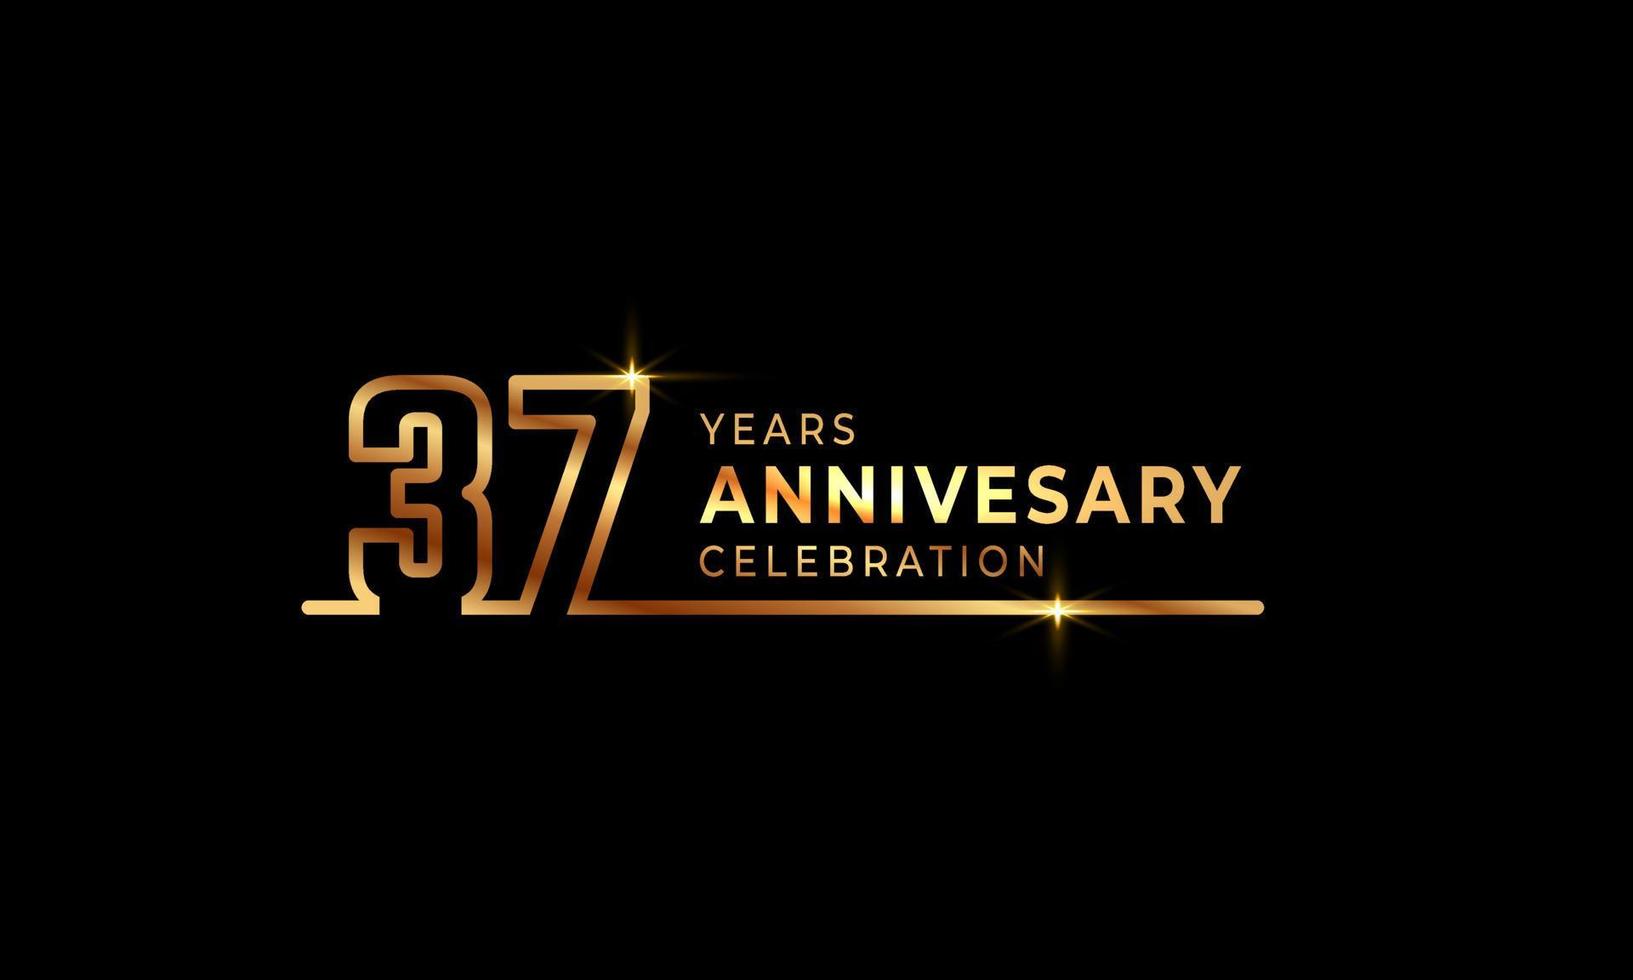 37-jarig jubileumviering logo met gouden gekleurde lettertypenummers gemaakt van één verbonden lijn voor feestgebeurtenis, bruiloft, wenskaart en uitnodiging geïsoleerd op donkere achtergrond vector